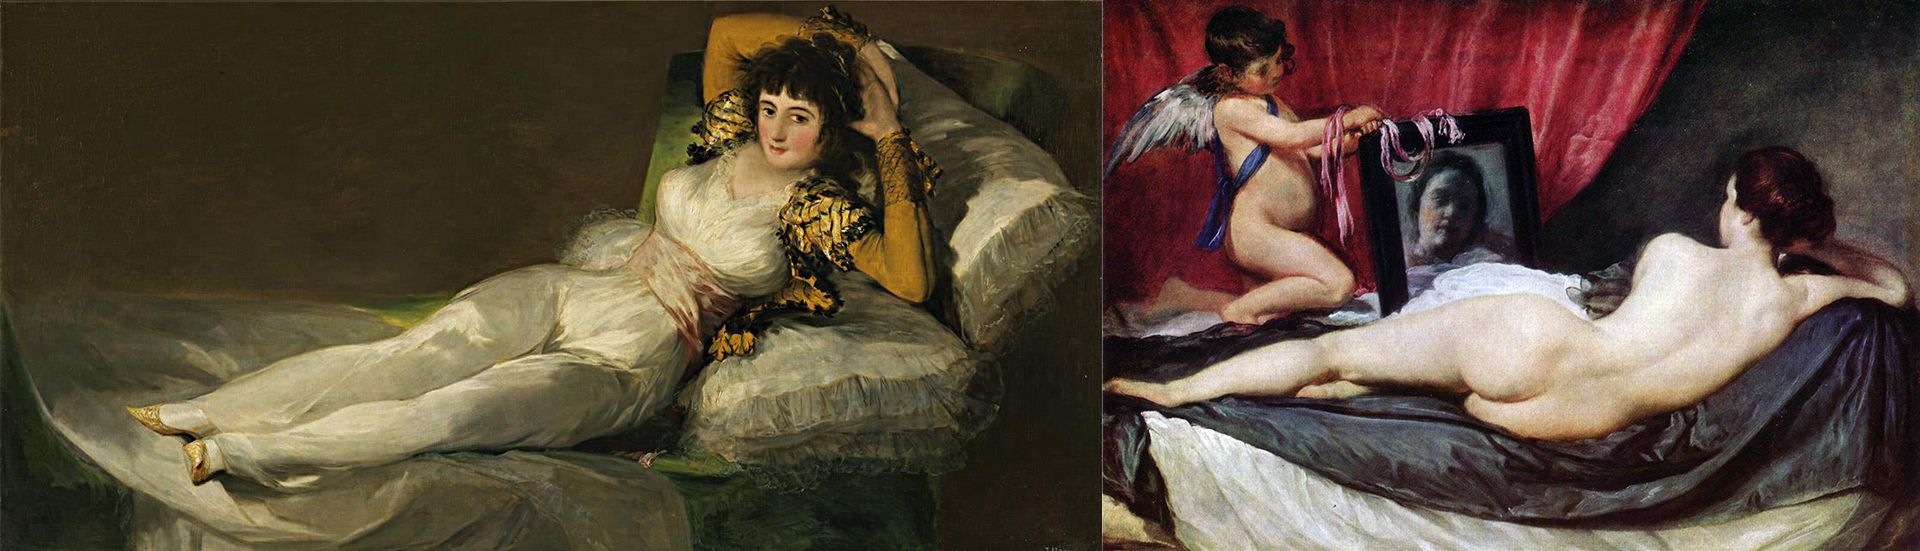 La belleza de la semana: “La maja desnuda”, de Francisco de Goya - Infobae